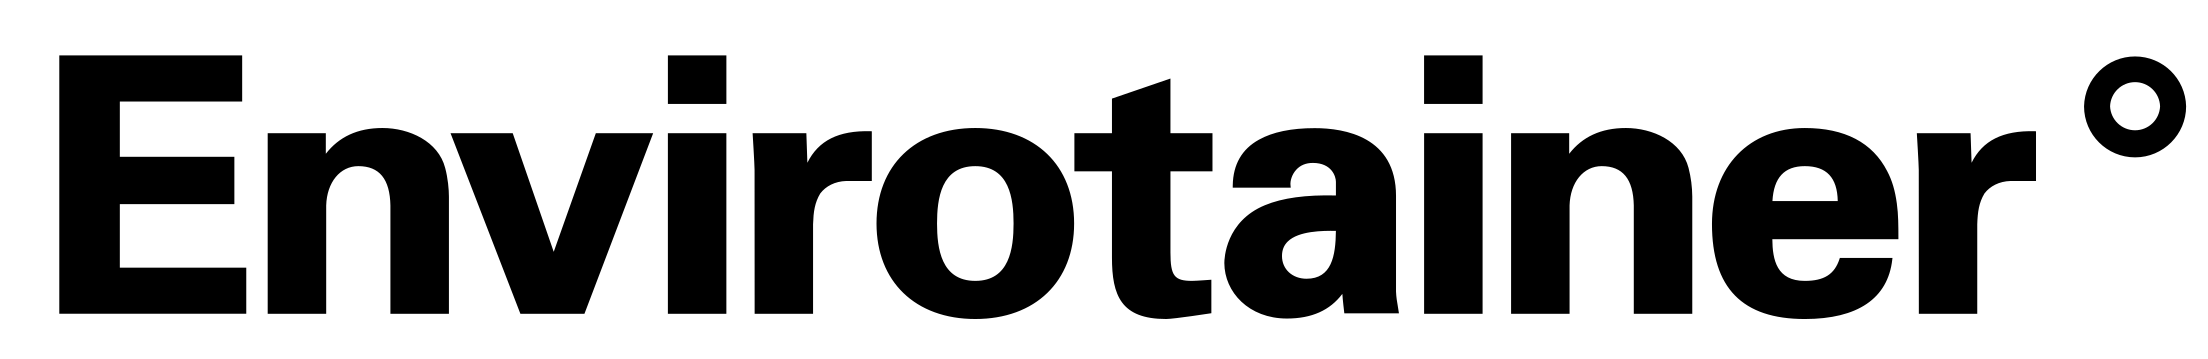 Envirotainer logo